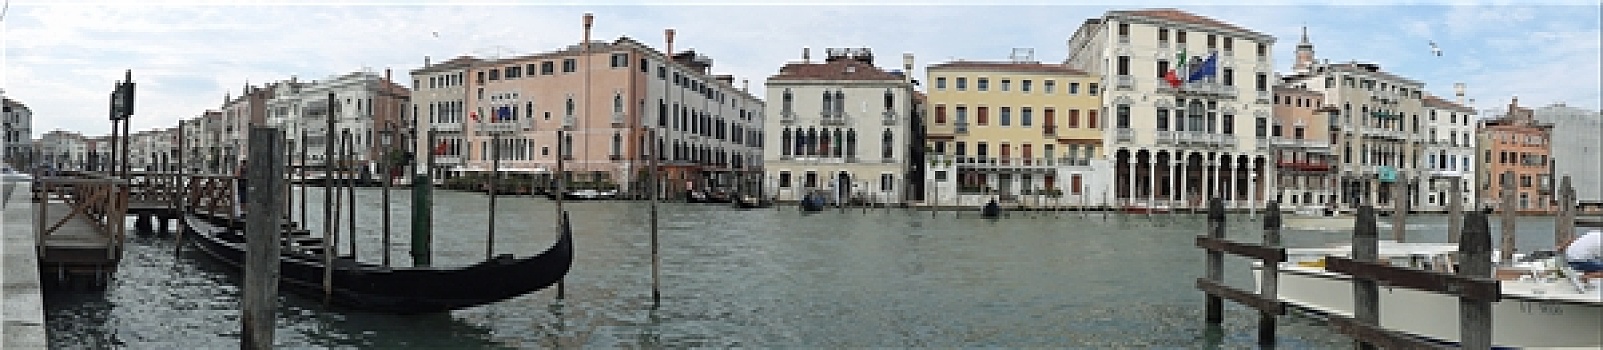 全景,大运河,威尼斯